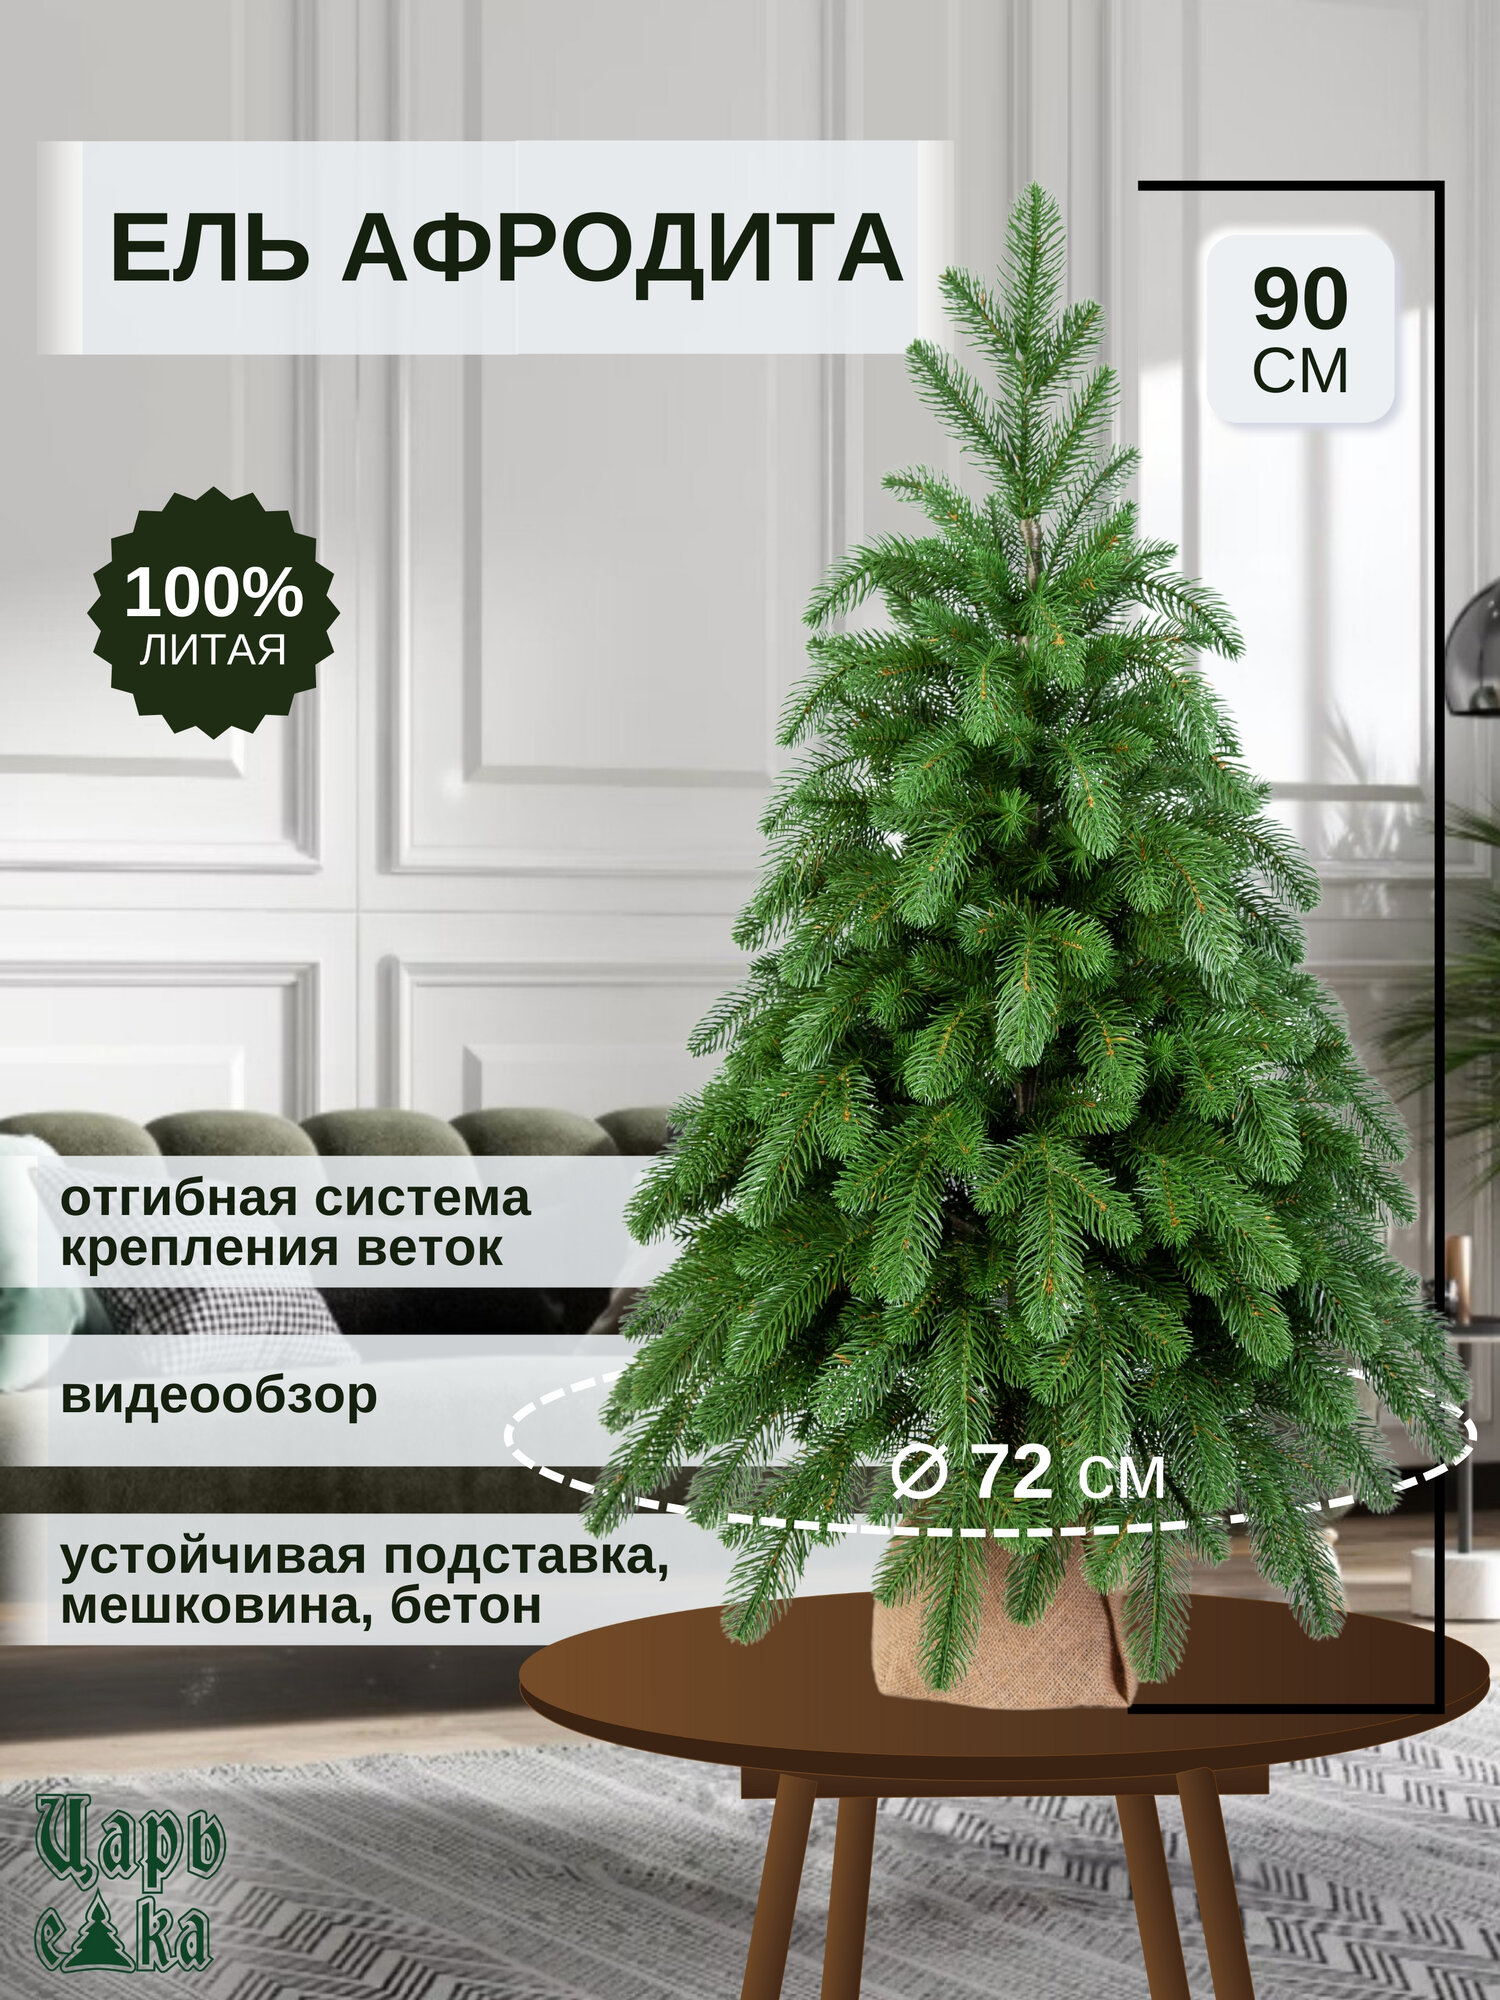 Ель искусственная Царь Елка Афродита 90см (АФР-90), новогодняя елка , премиум, литая.